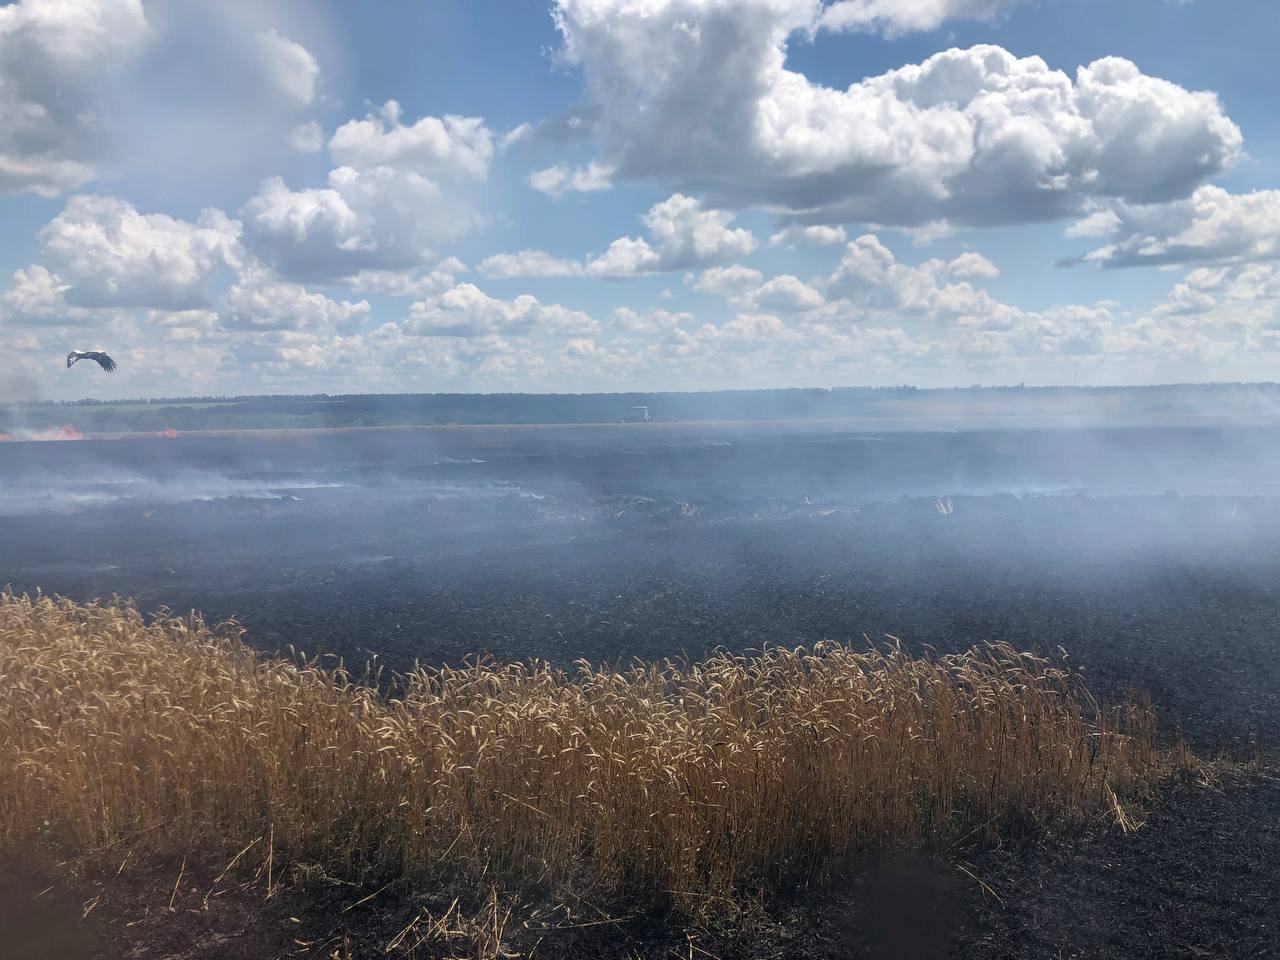 В Харьковской области сгорело более 237,6 га пшеницы